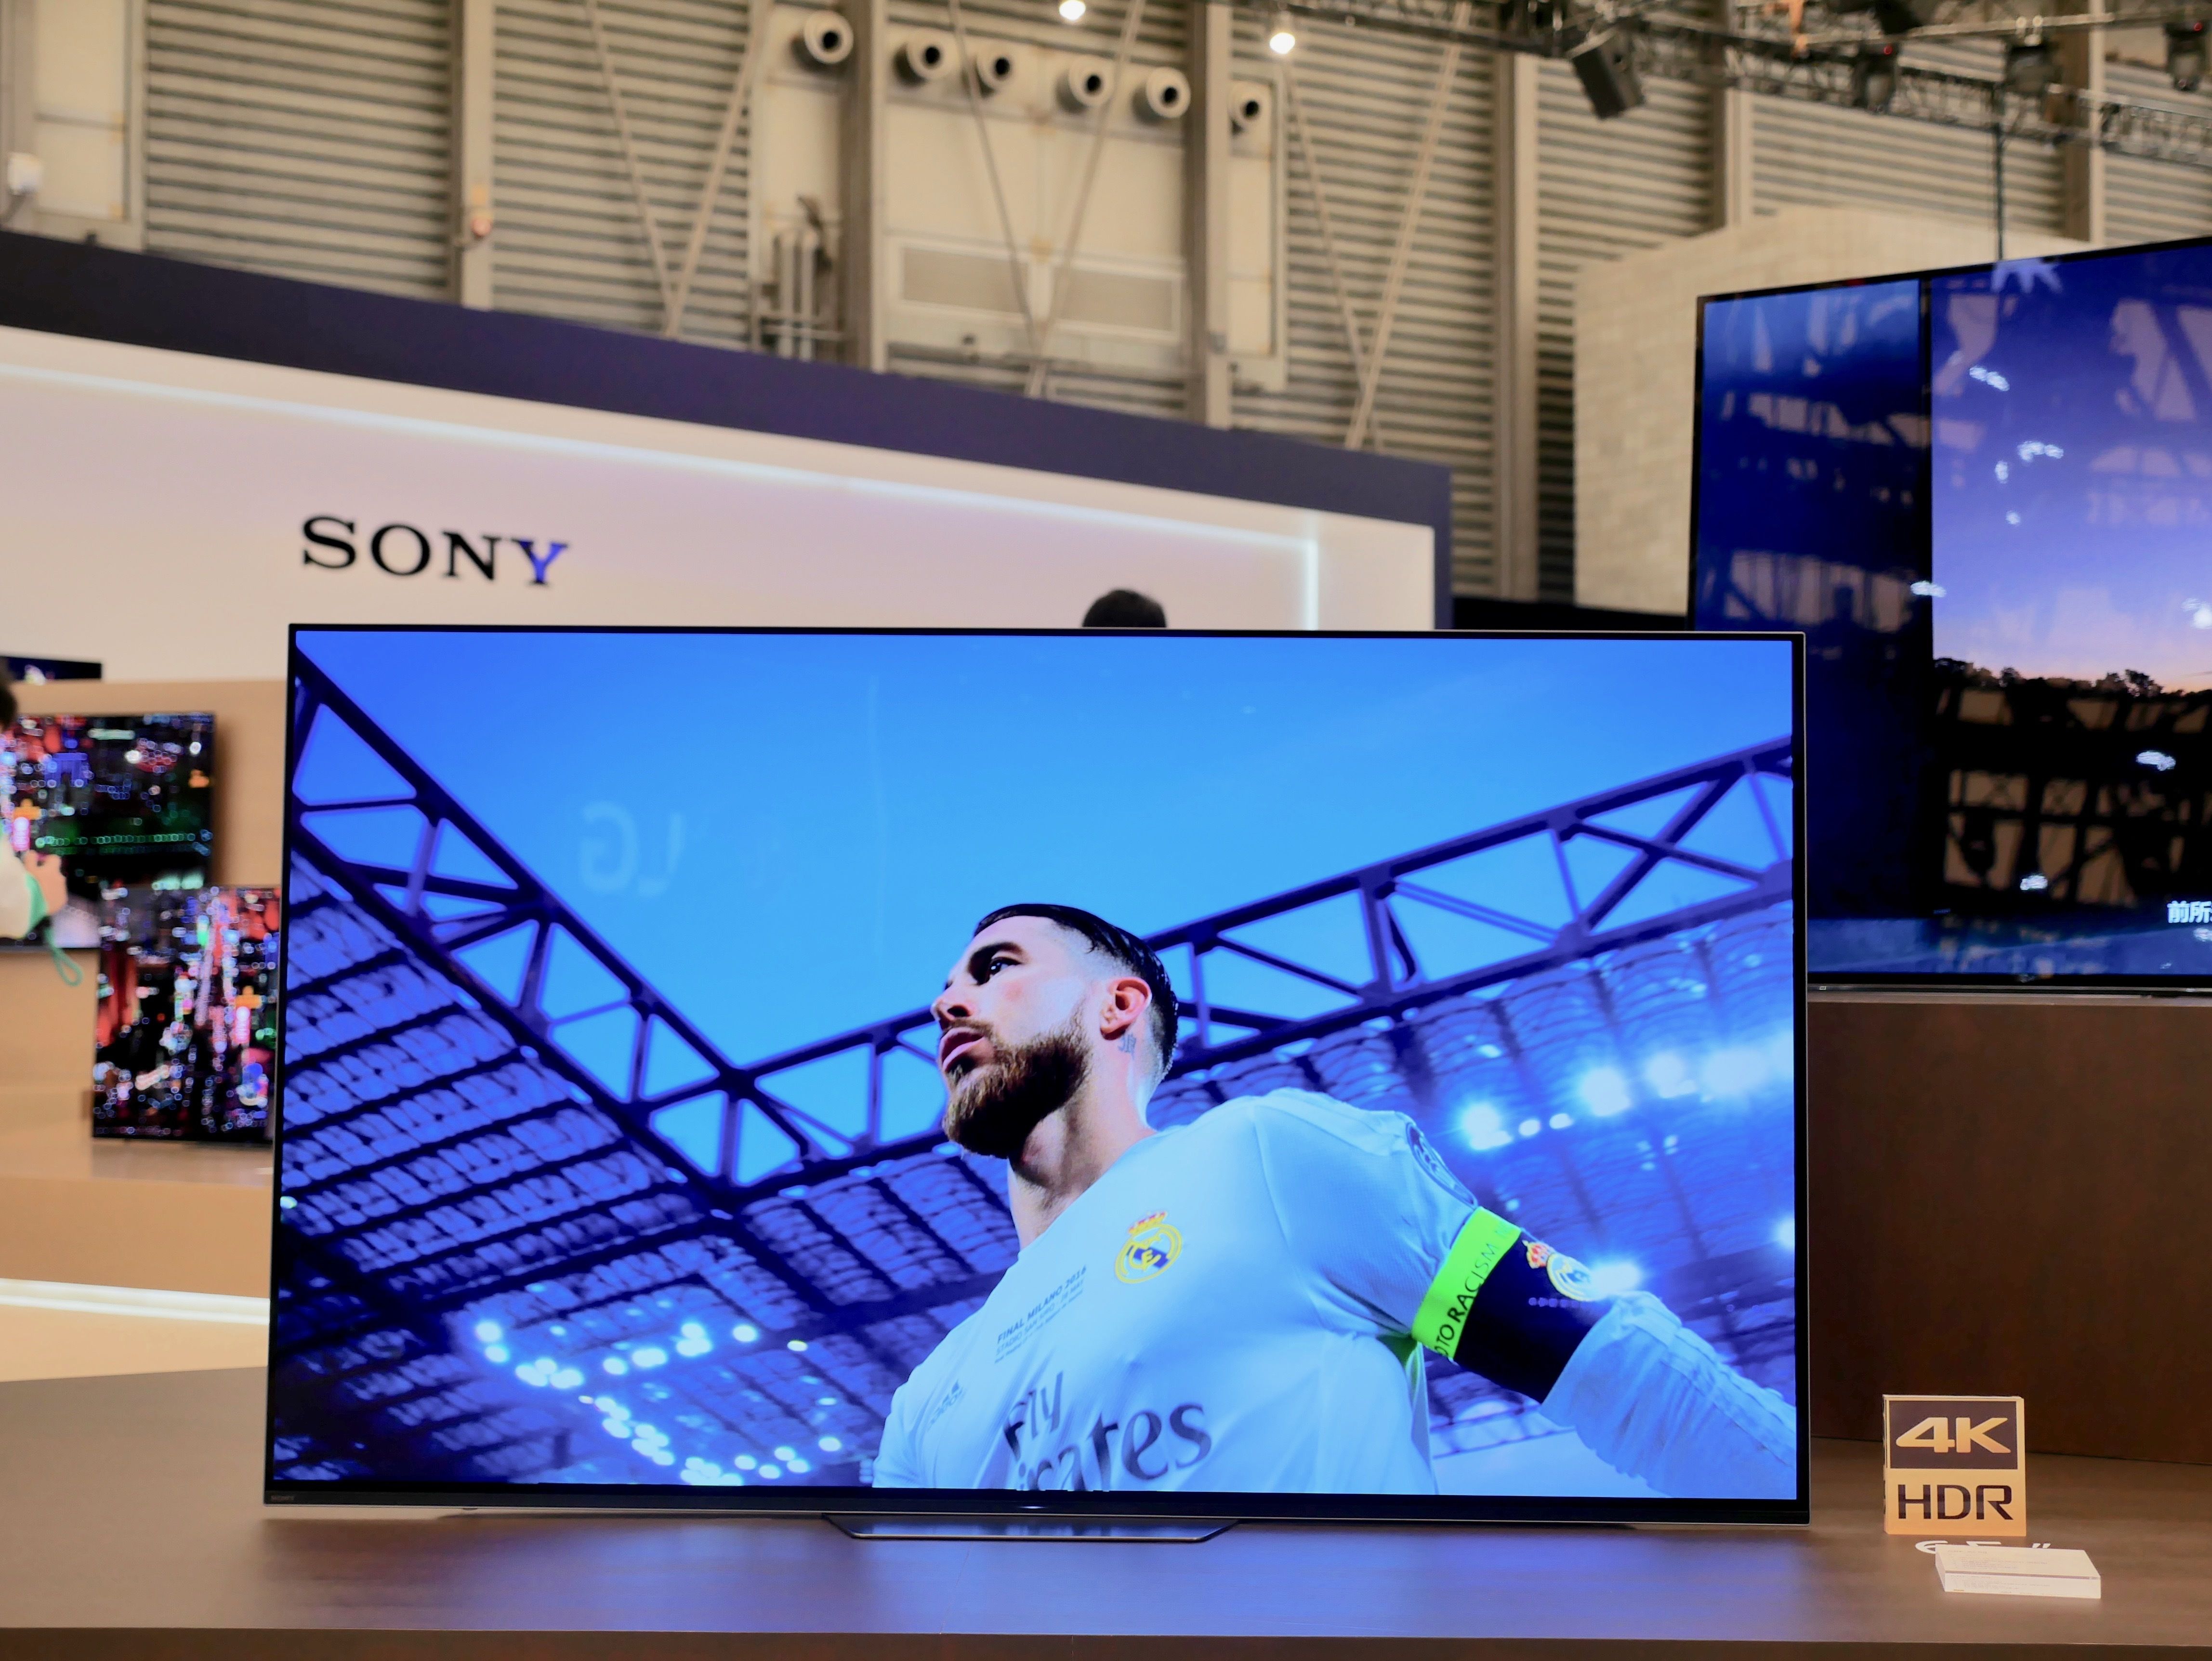 降低画质不变,索尼发布第二款 OLED 电视机 A8F